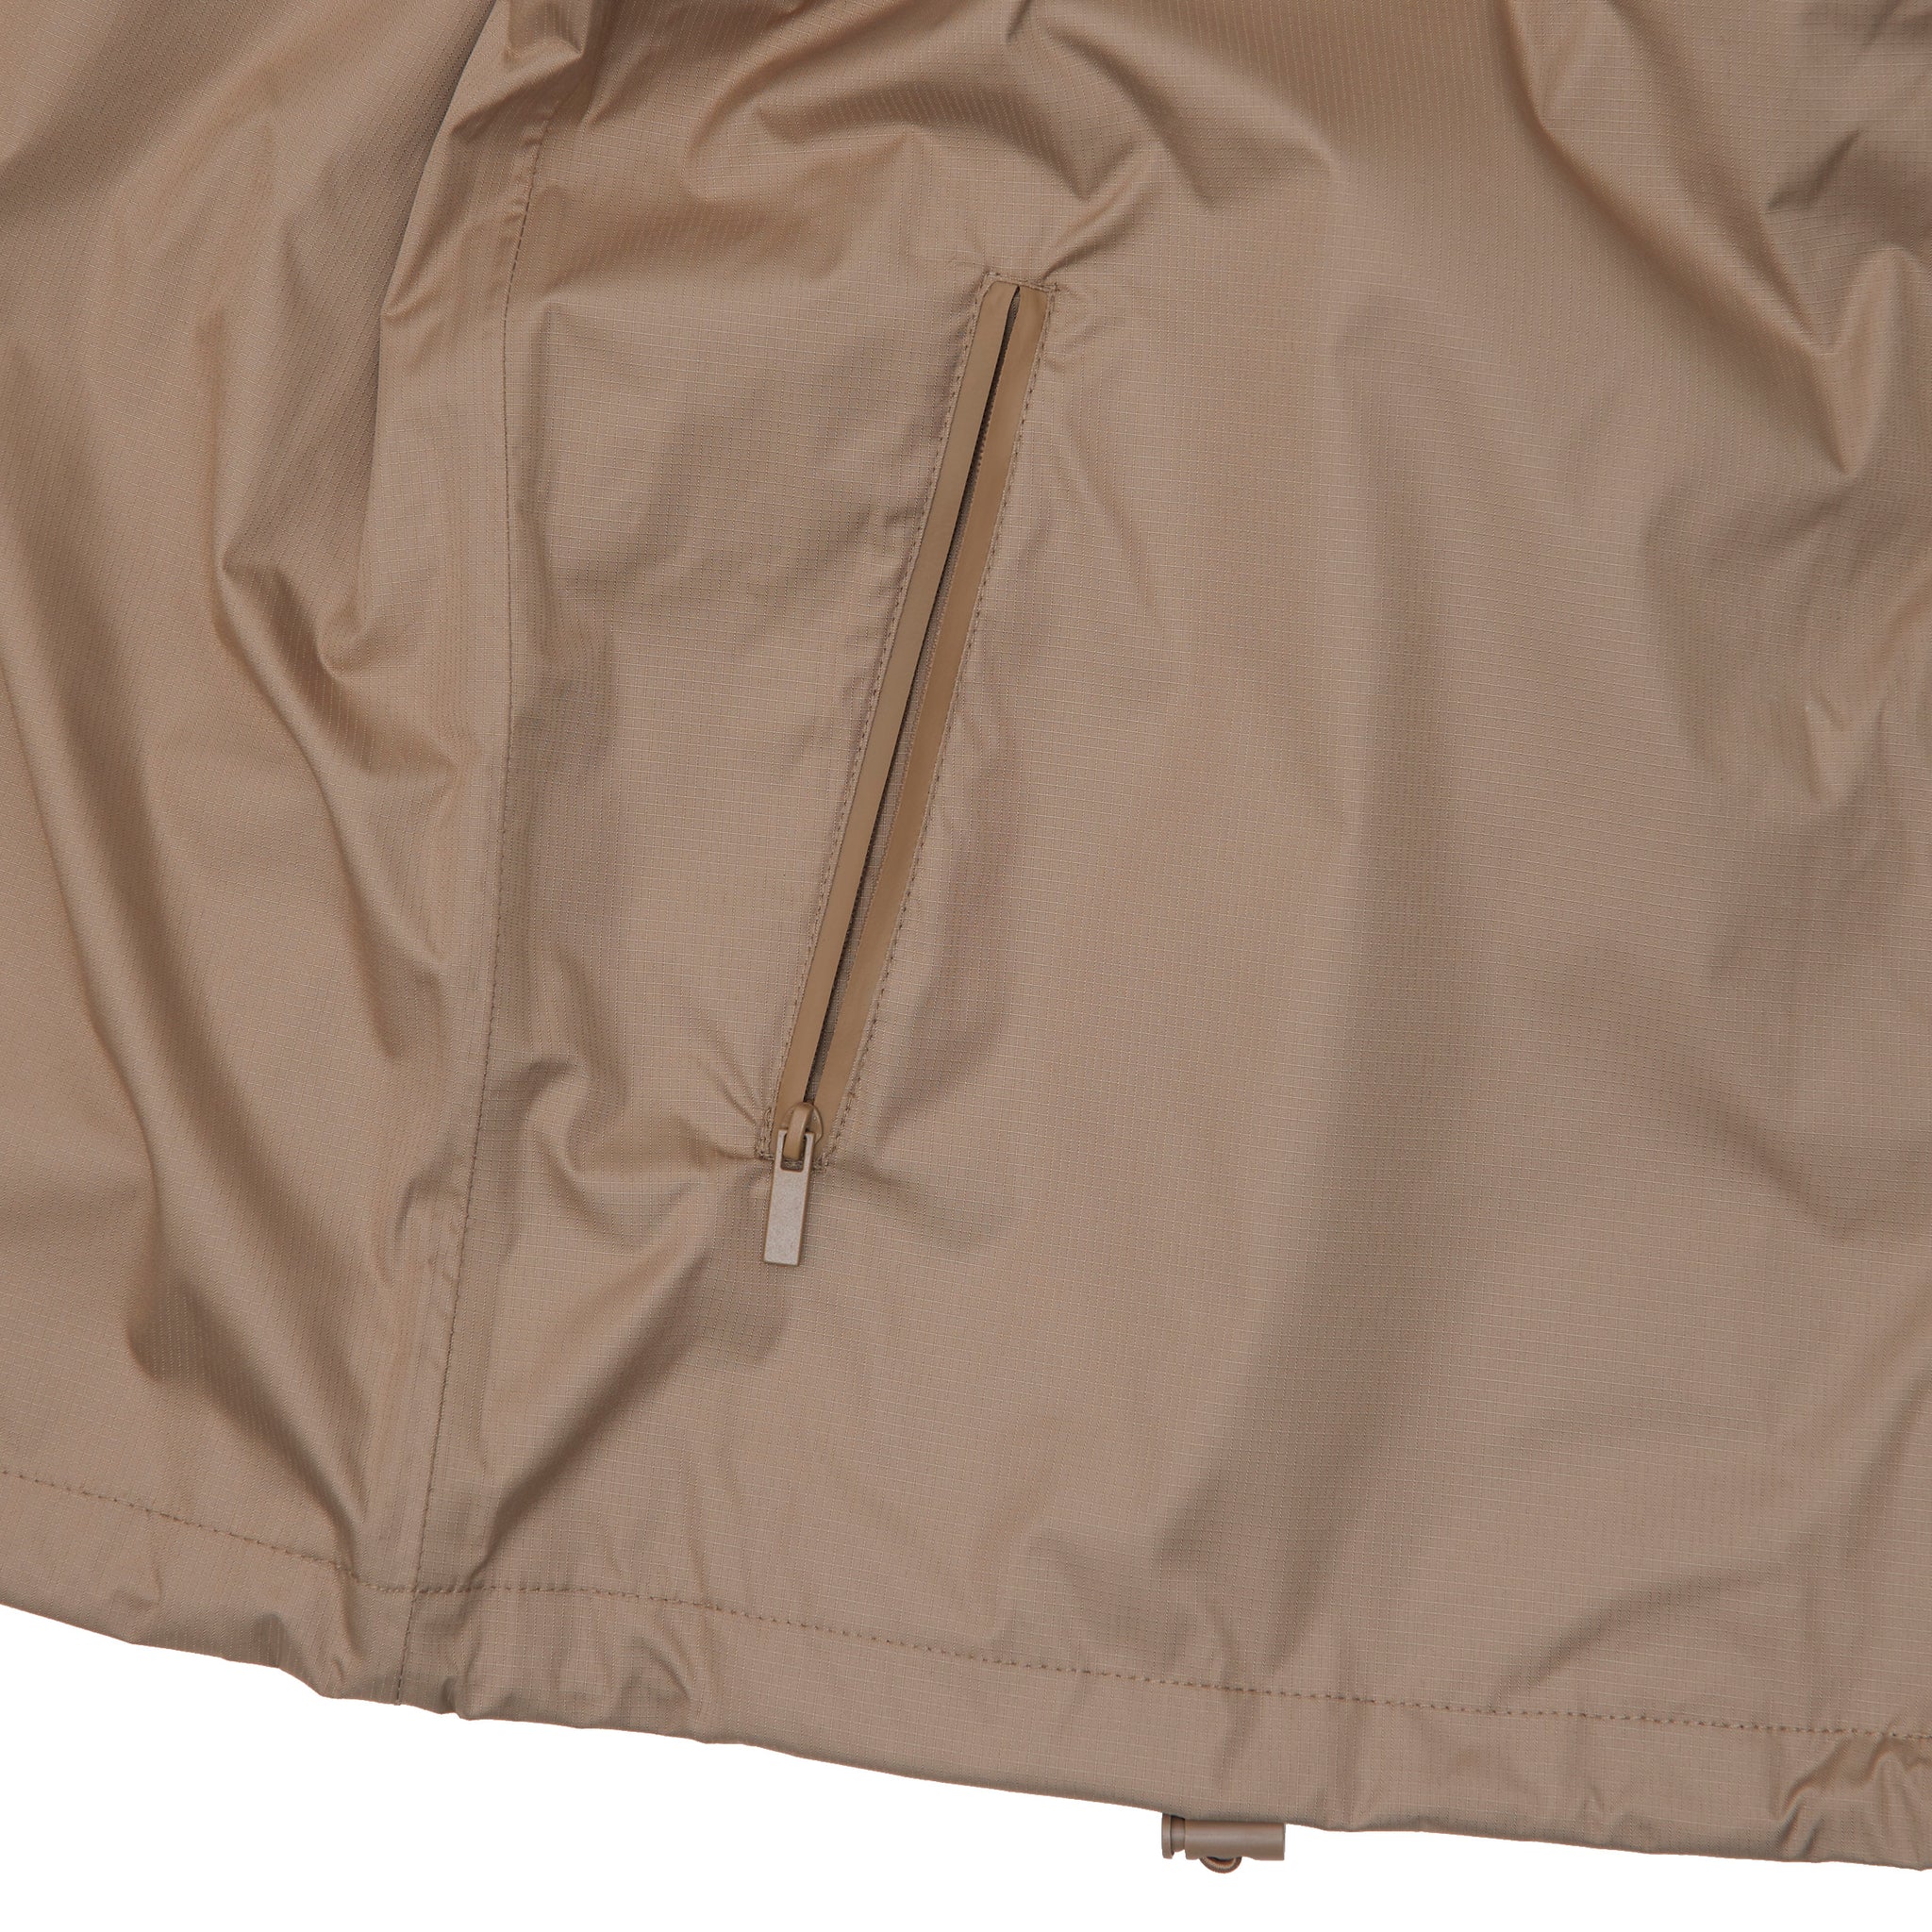 Global Zip Jacket - Khaki